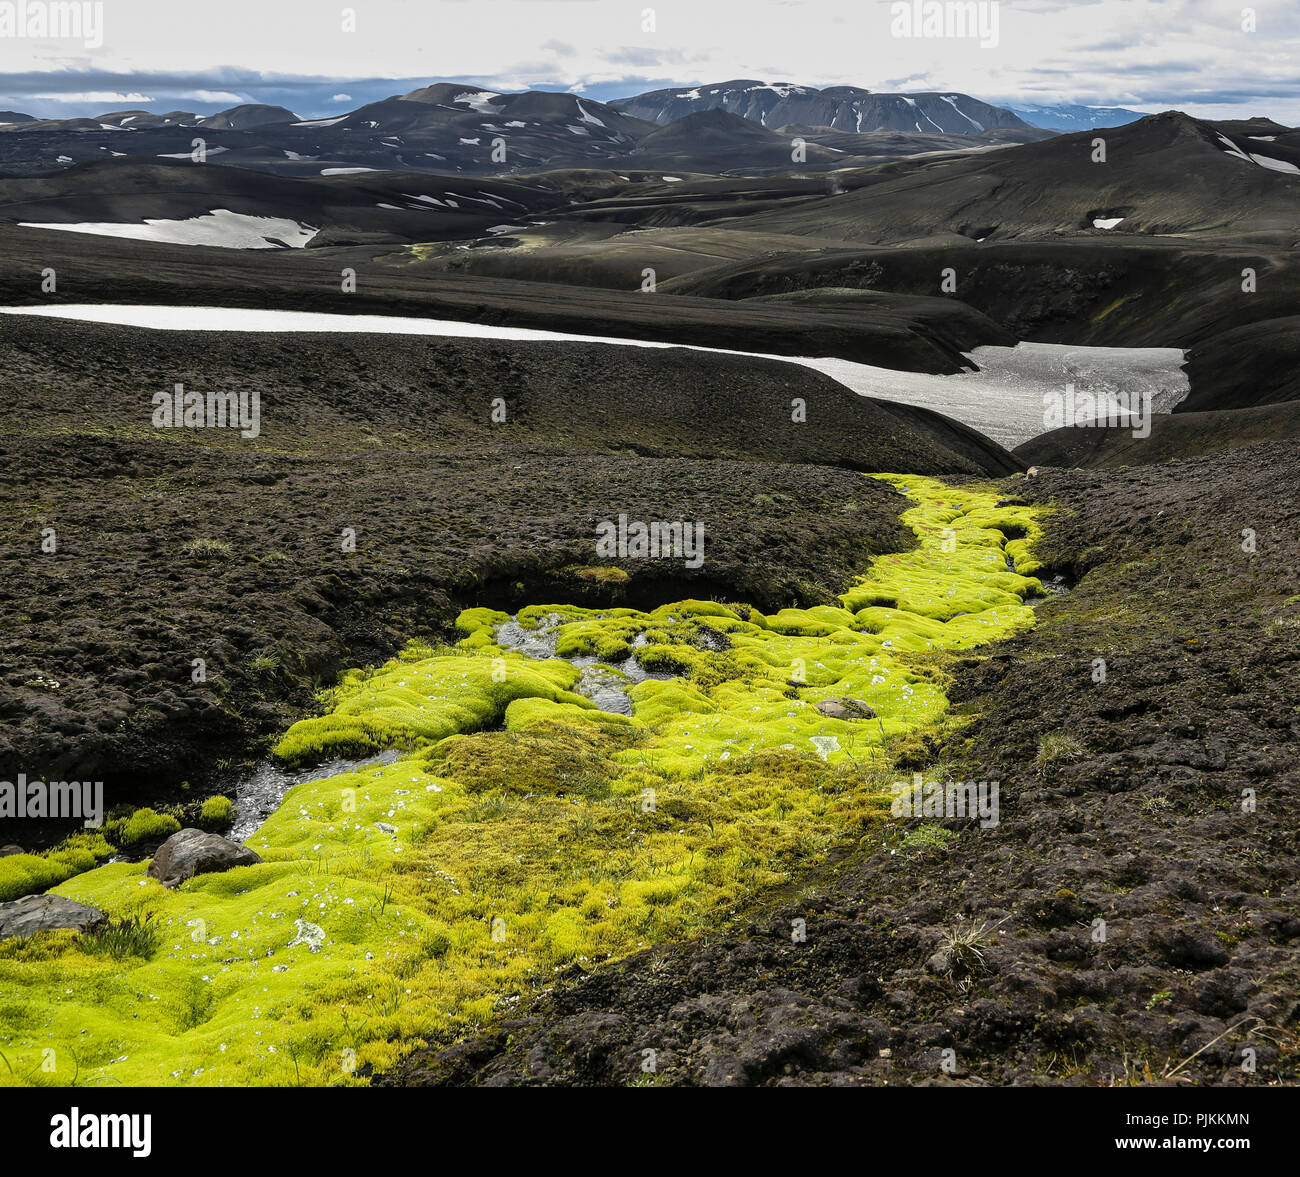 Island, giftgrün Moos an einem kleinen Bach im schwarzen Lavasand, Wüste, Schnee und Berge Stockfoto